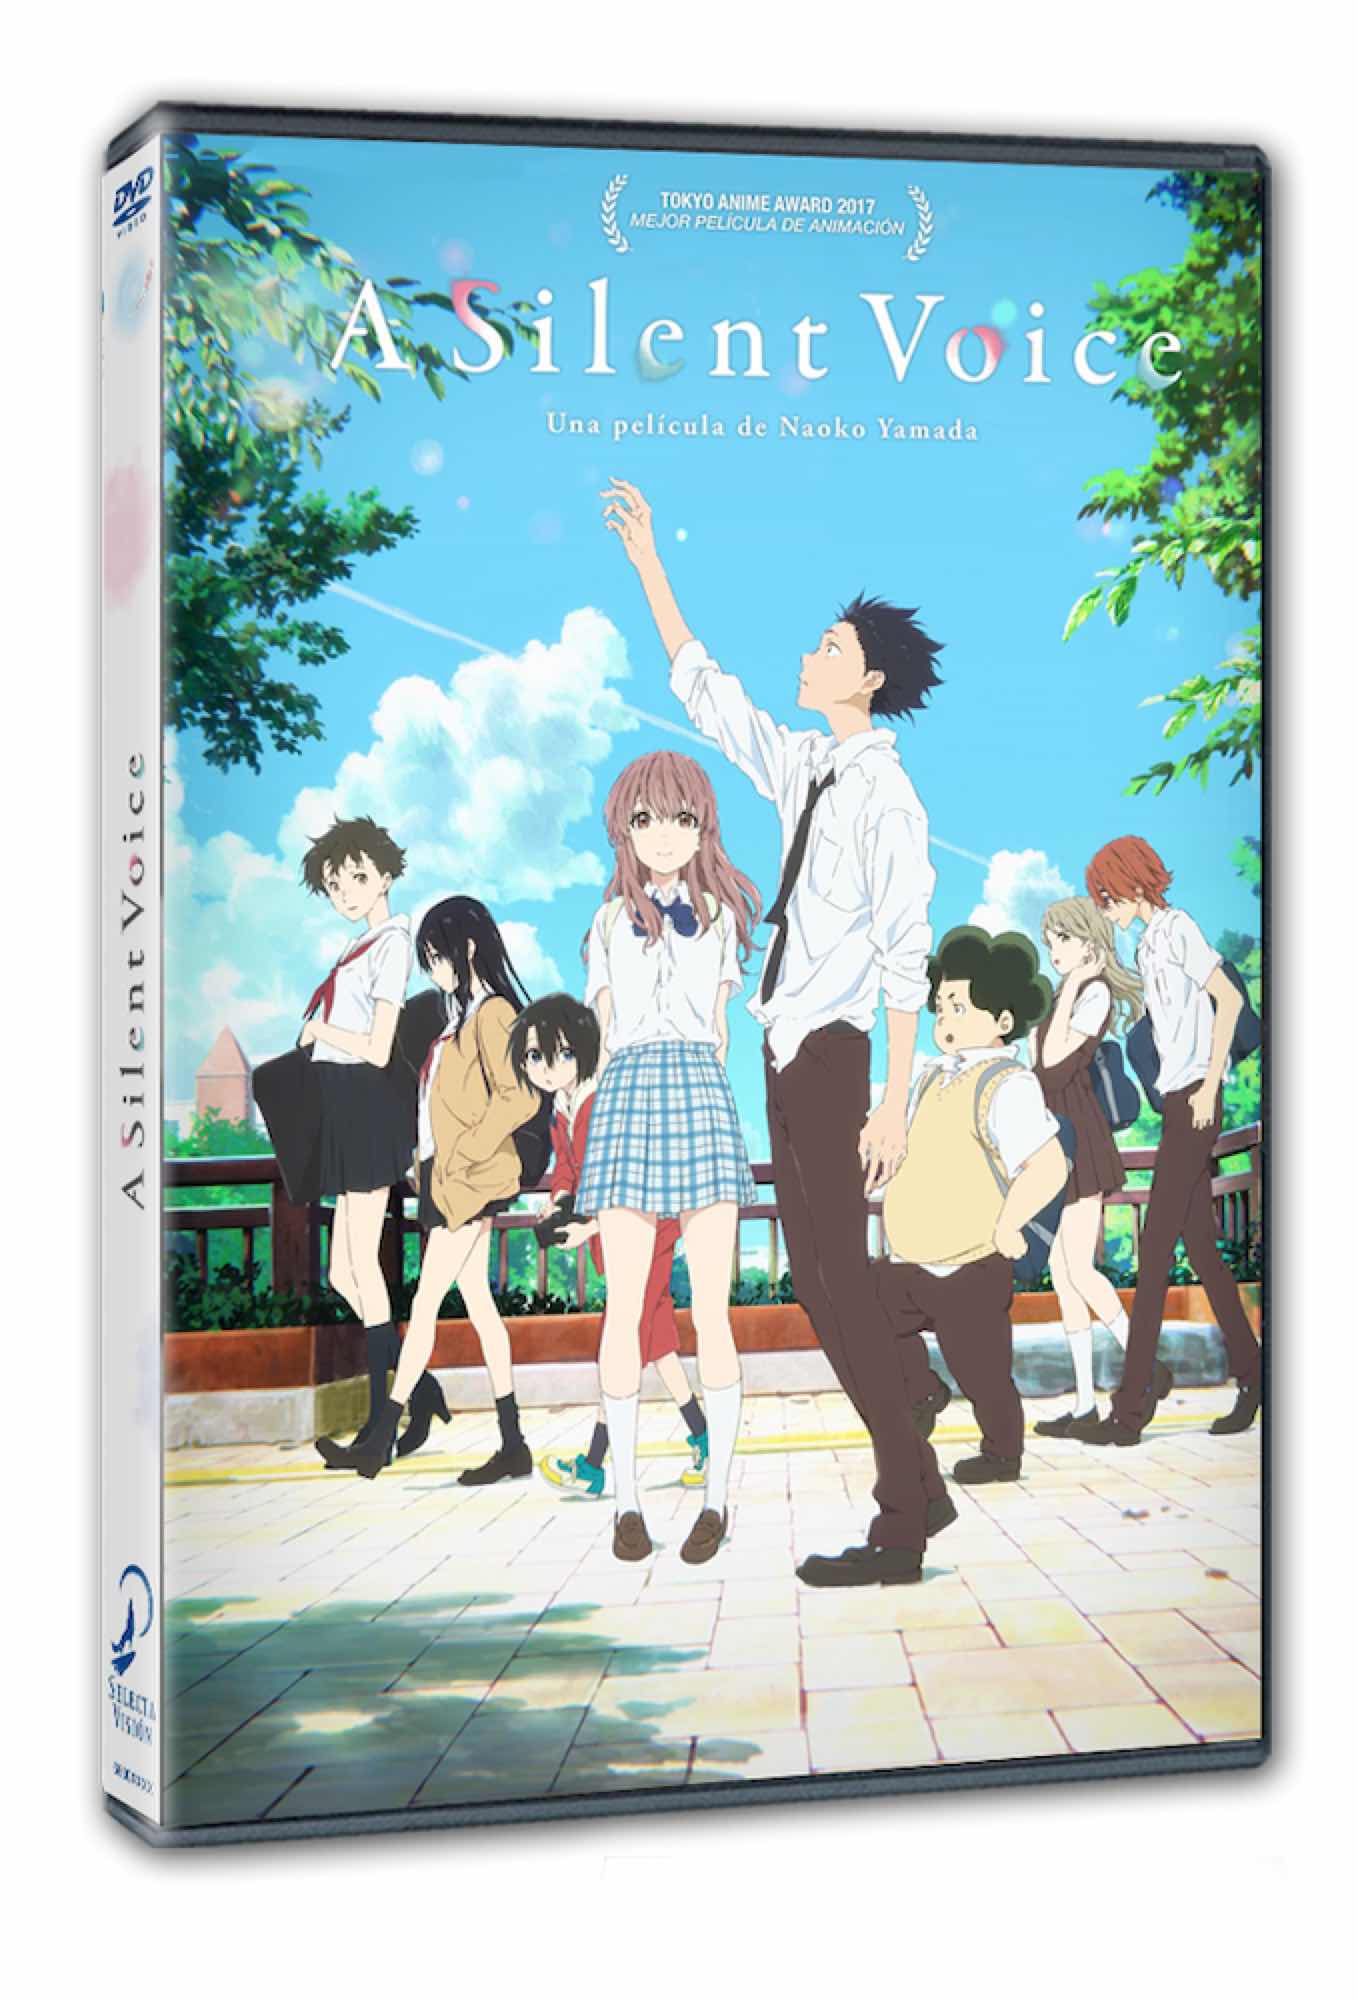 DVD A SILENT VOICE